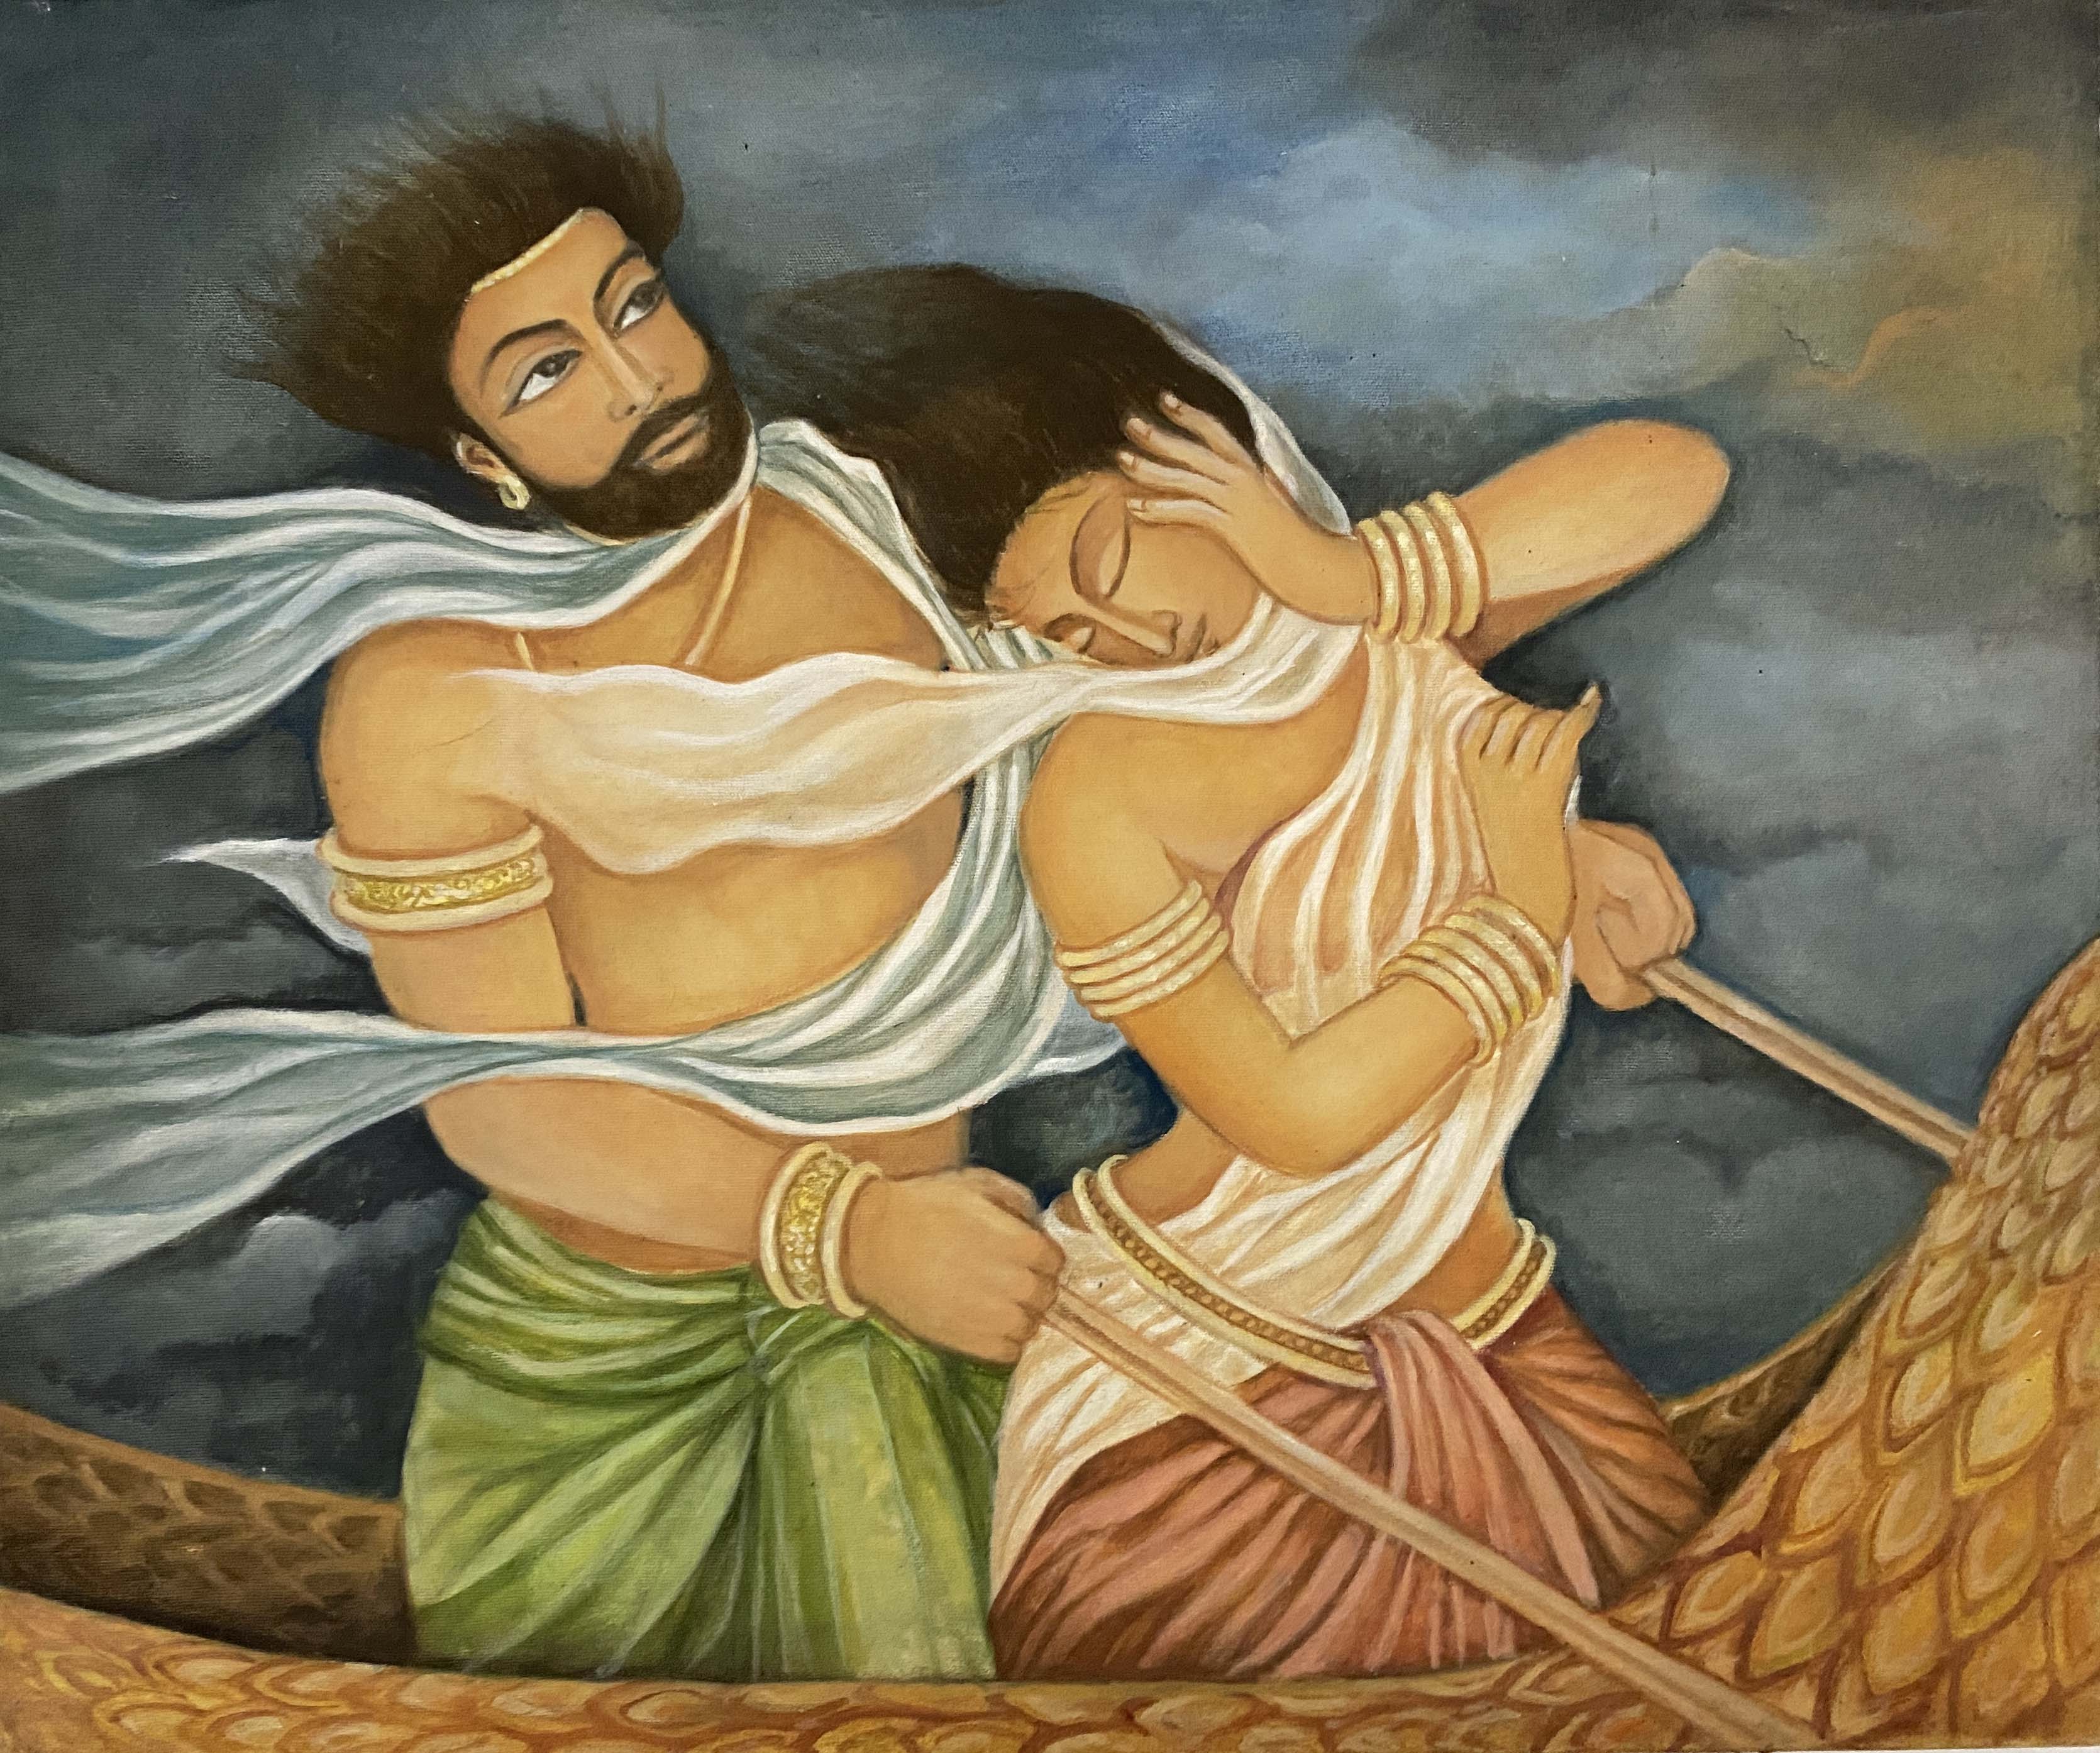 Rawana by Upul Jayashantha